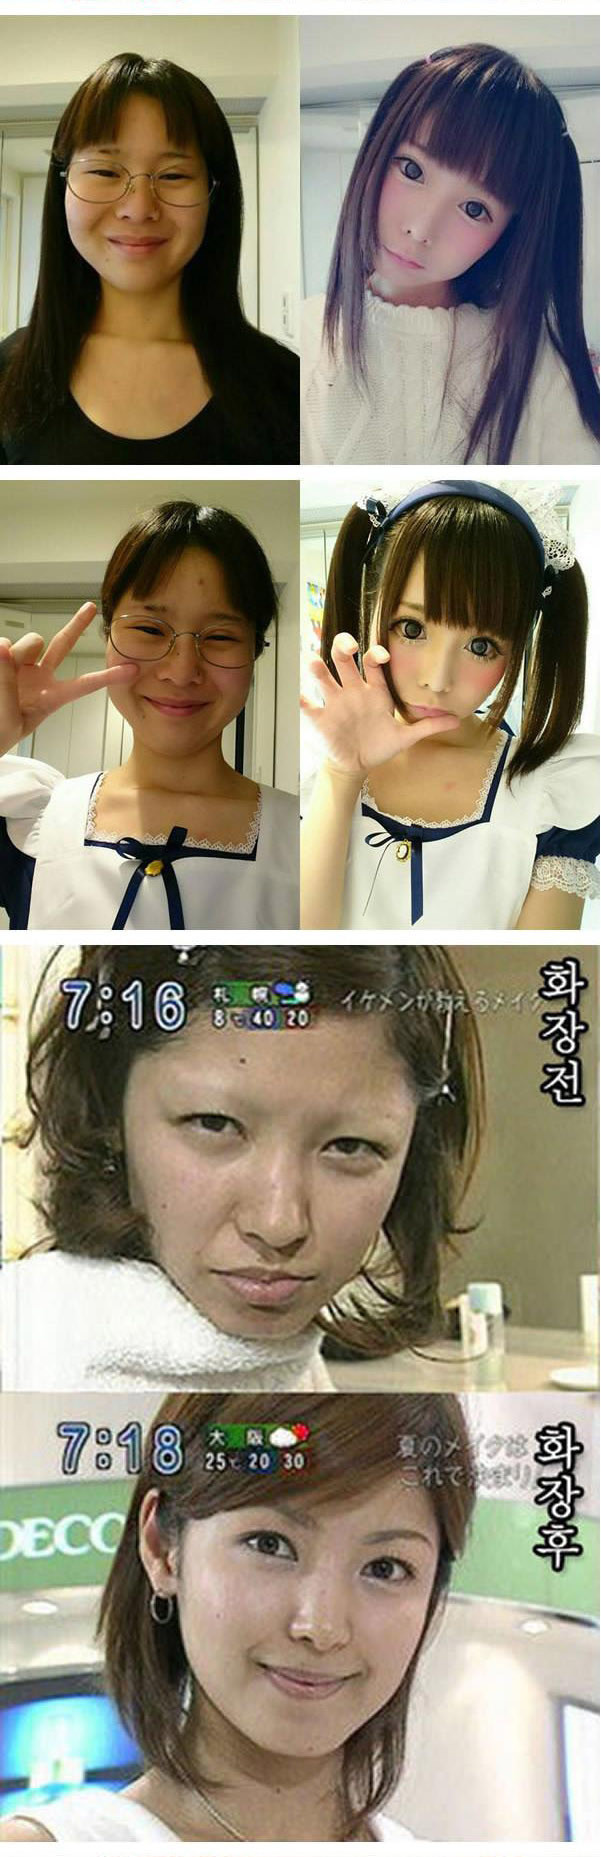 До и после: фото, которые откроют вам глаза на убойную силу макияжа